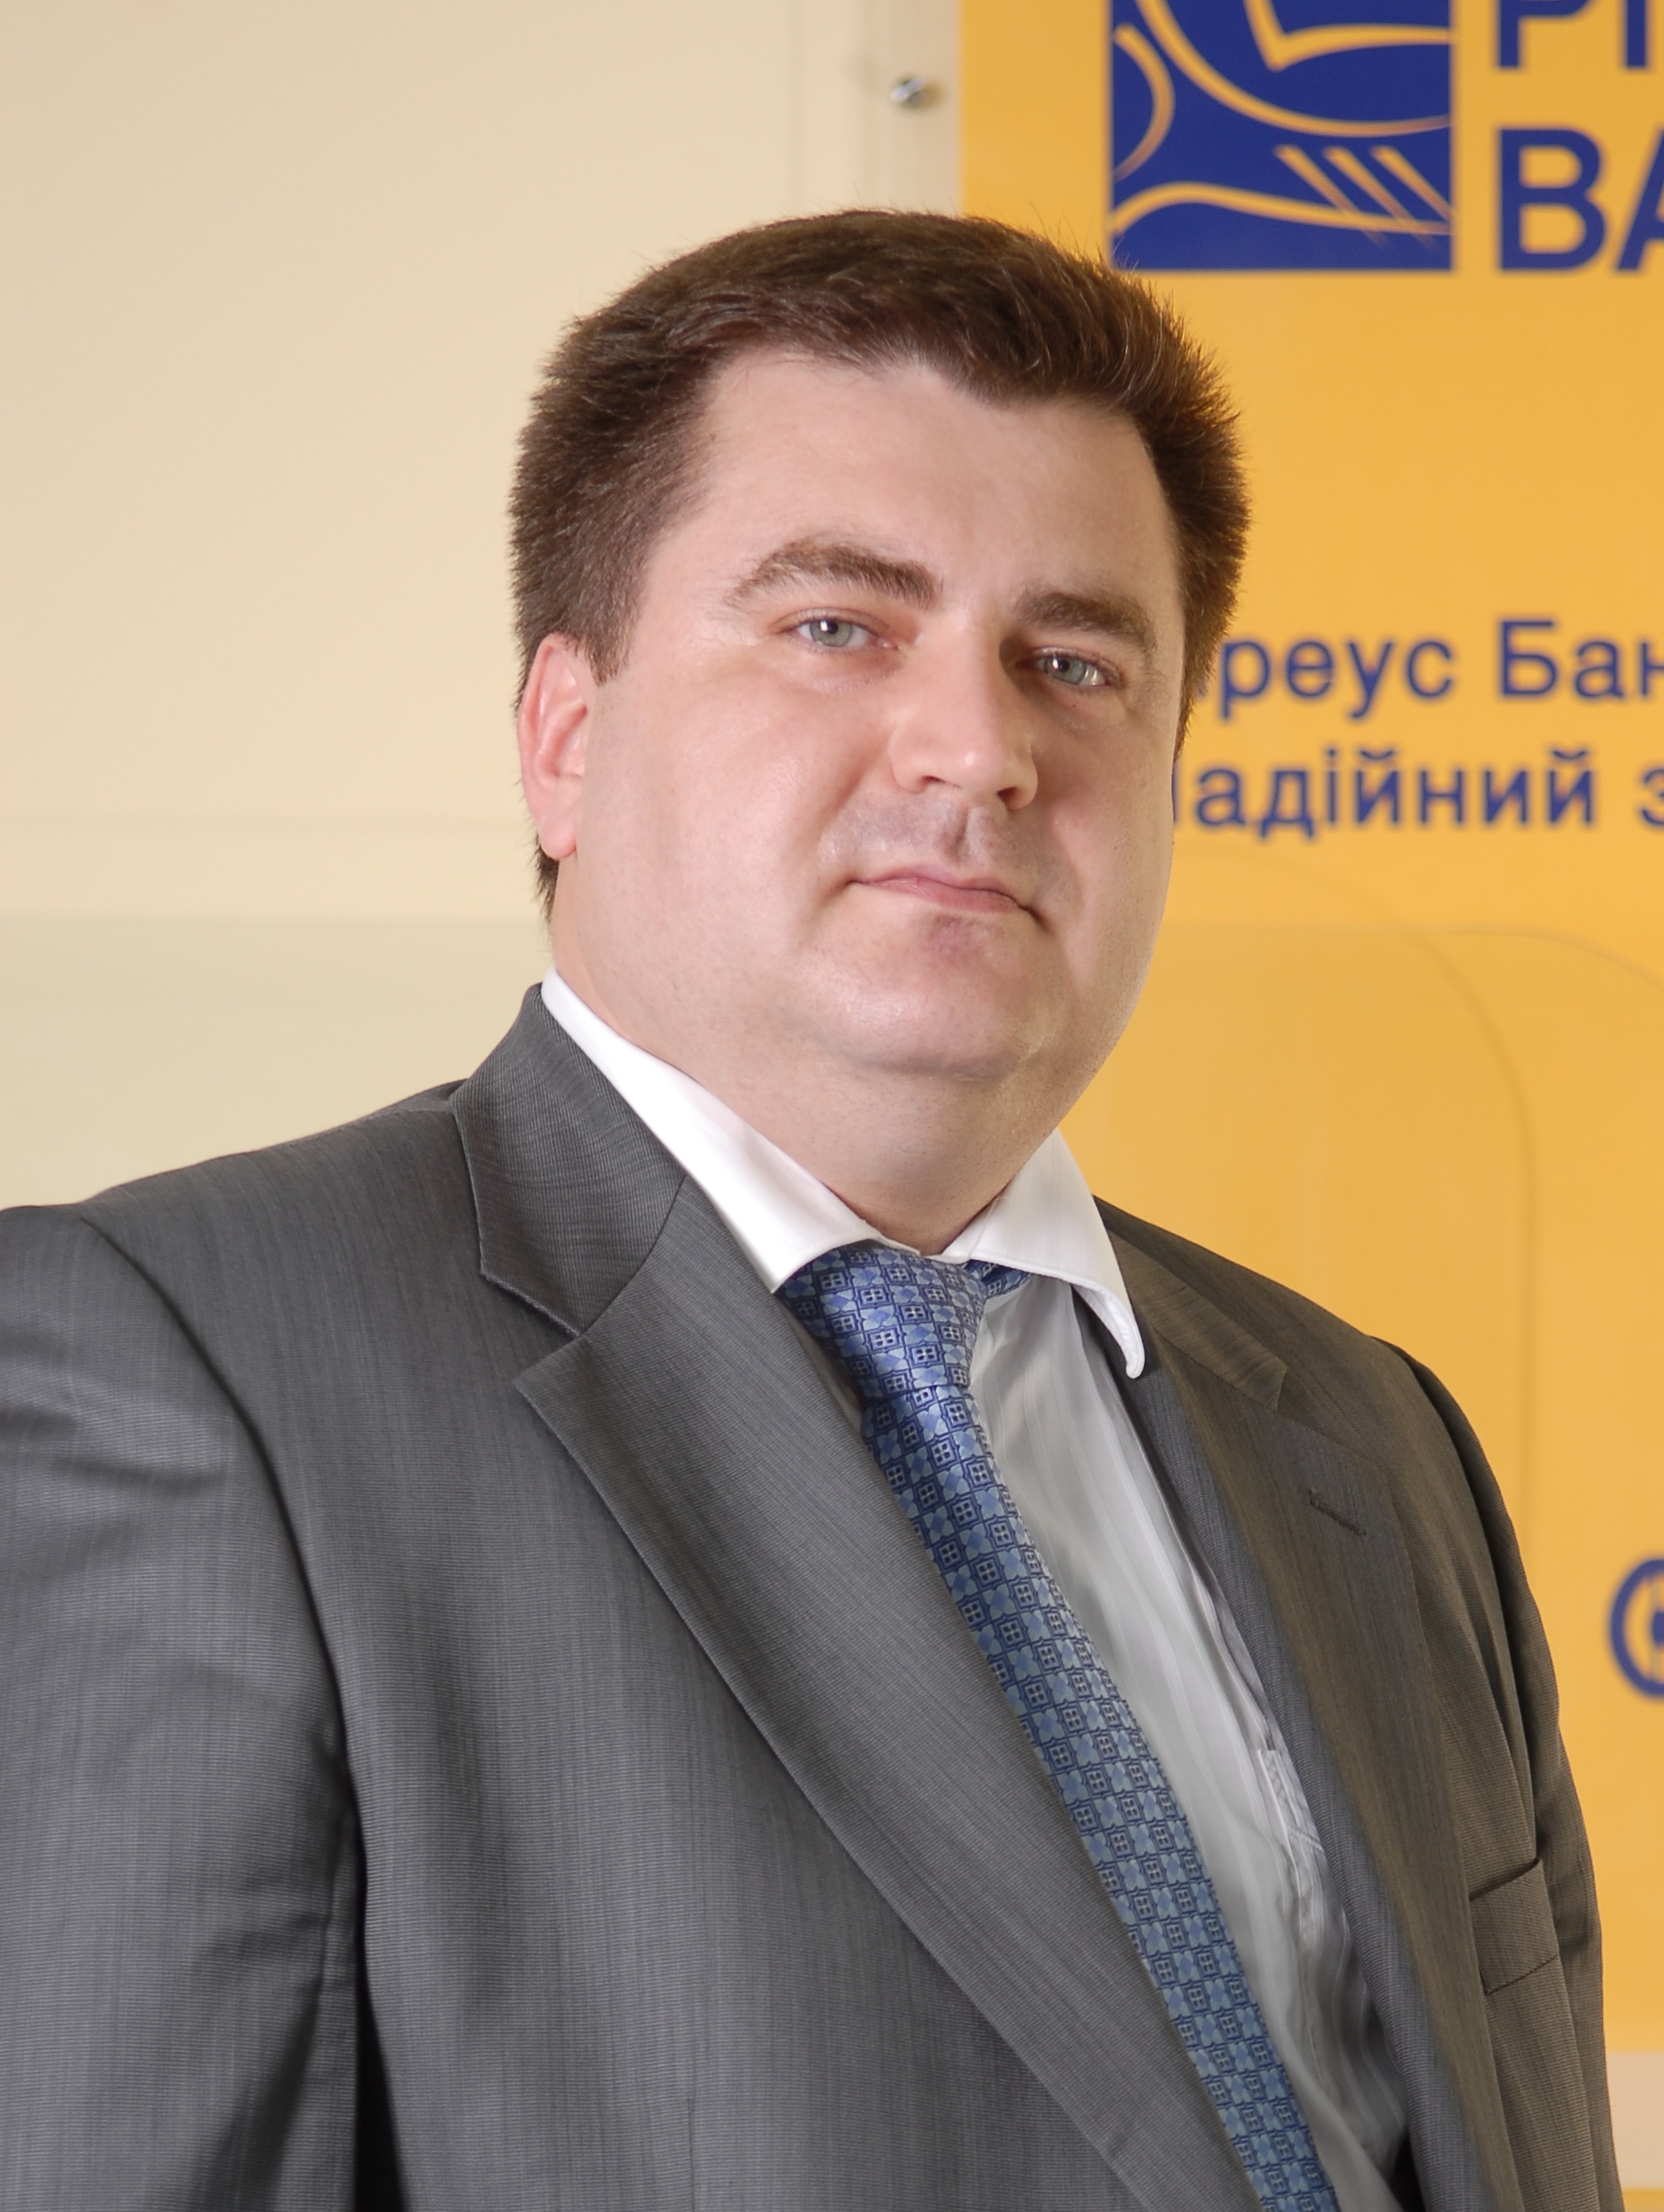 Дмитрий Мусиенко, член правления, директор департамента филиальной сети Пиреус Банка в Украине: 